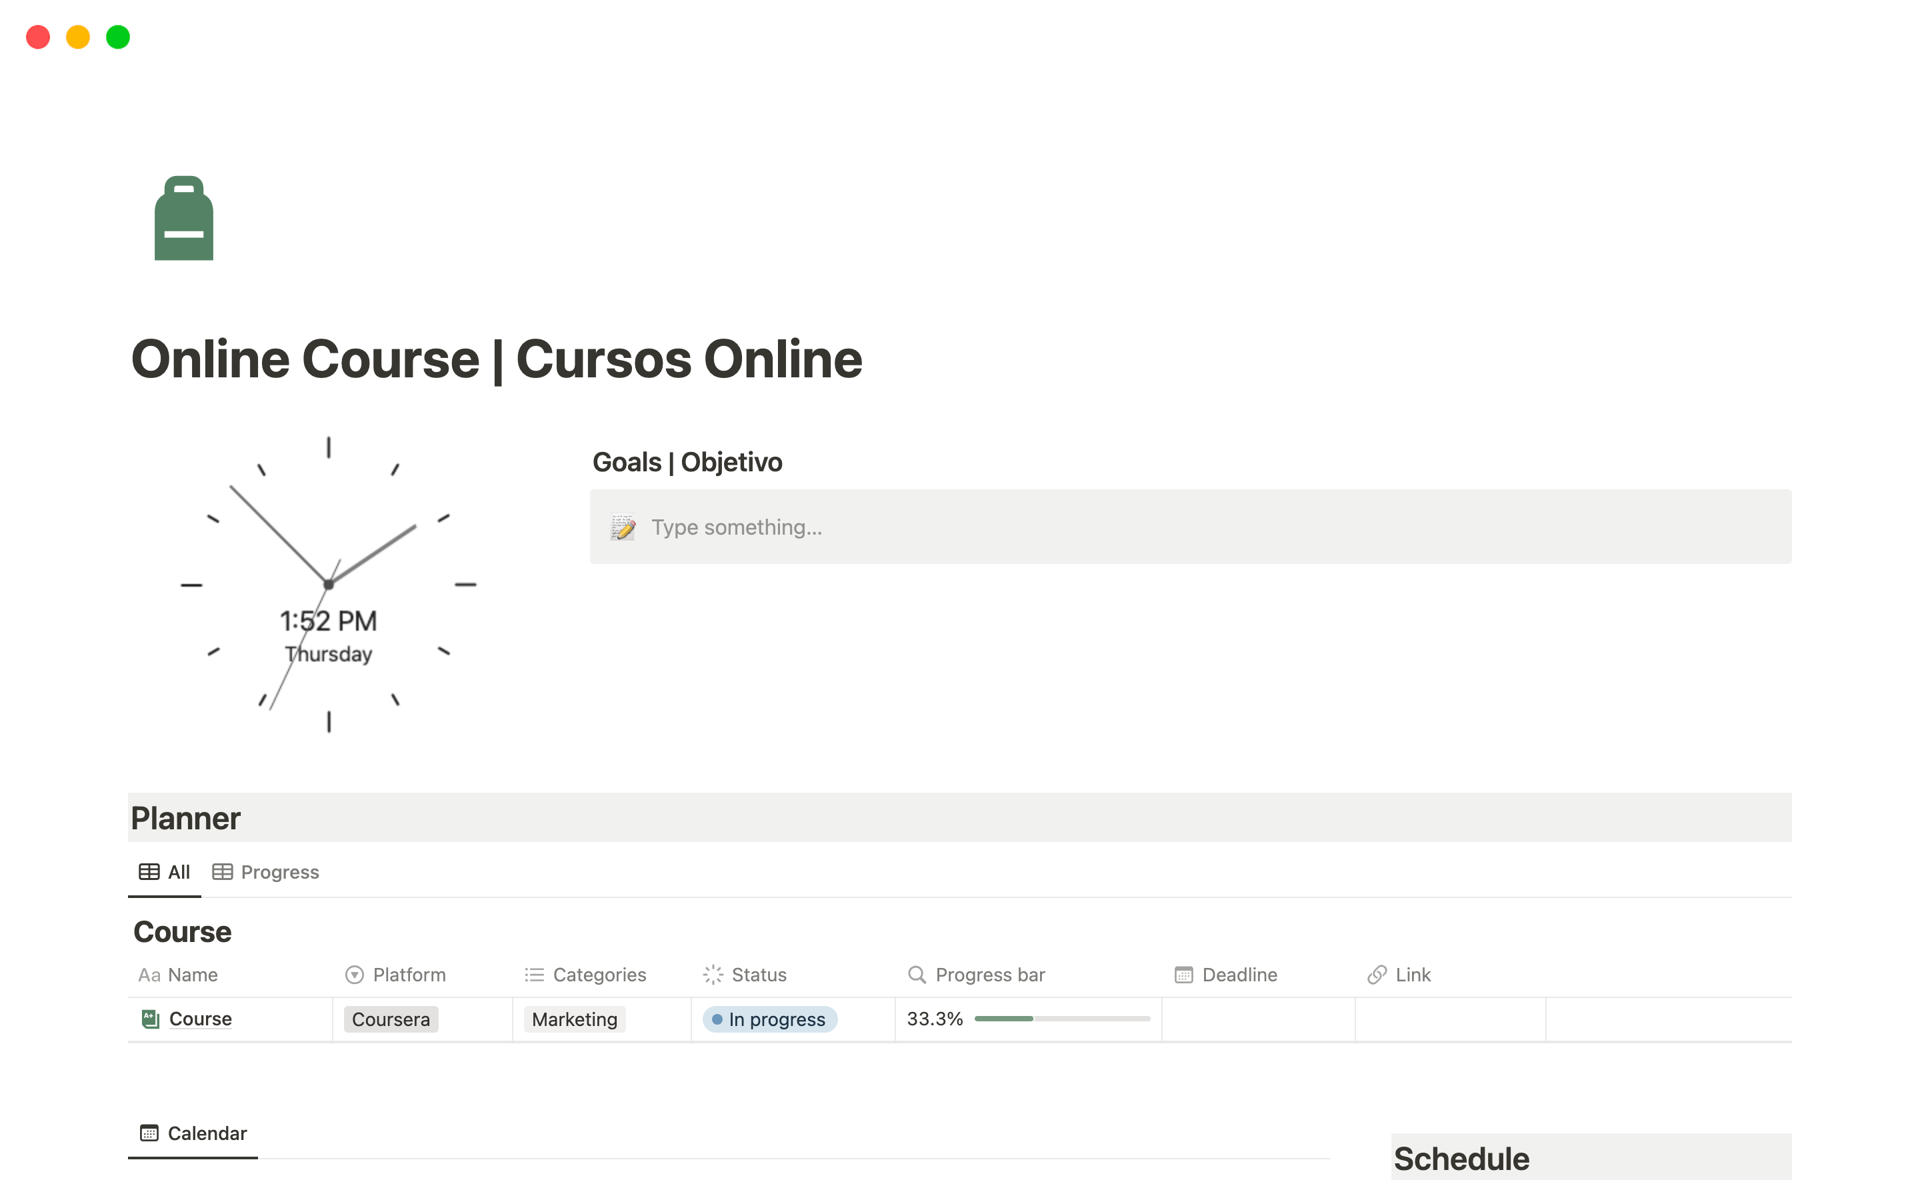 Vista previa de una plantilla para Online Course | Cursos Online